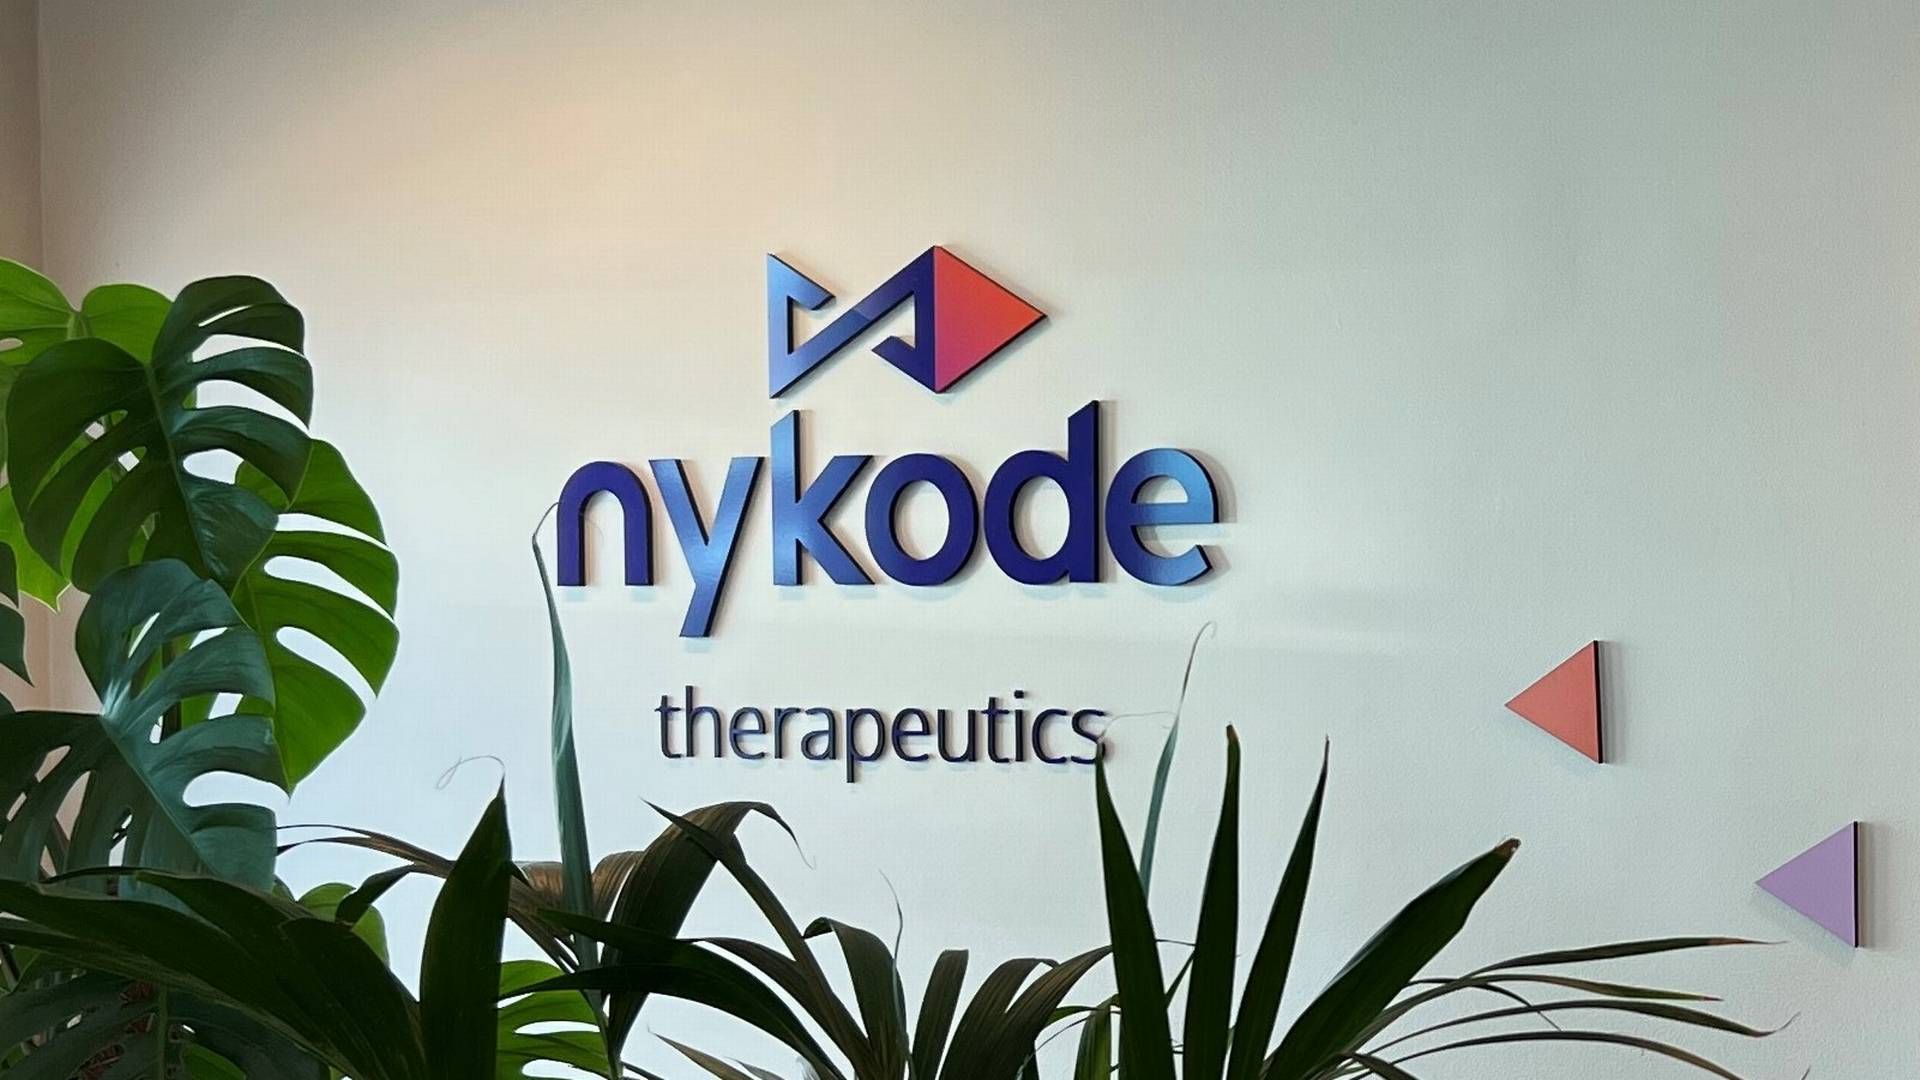 Nykode Therapeutics fastholder indtil videre sit hovedkvarter i Norge, selvom langt de fleste chefer bor og arbejder i Danmark. | Foto: Nykode/pr